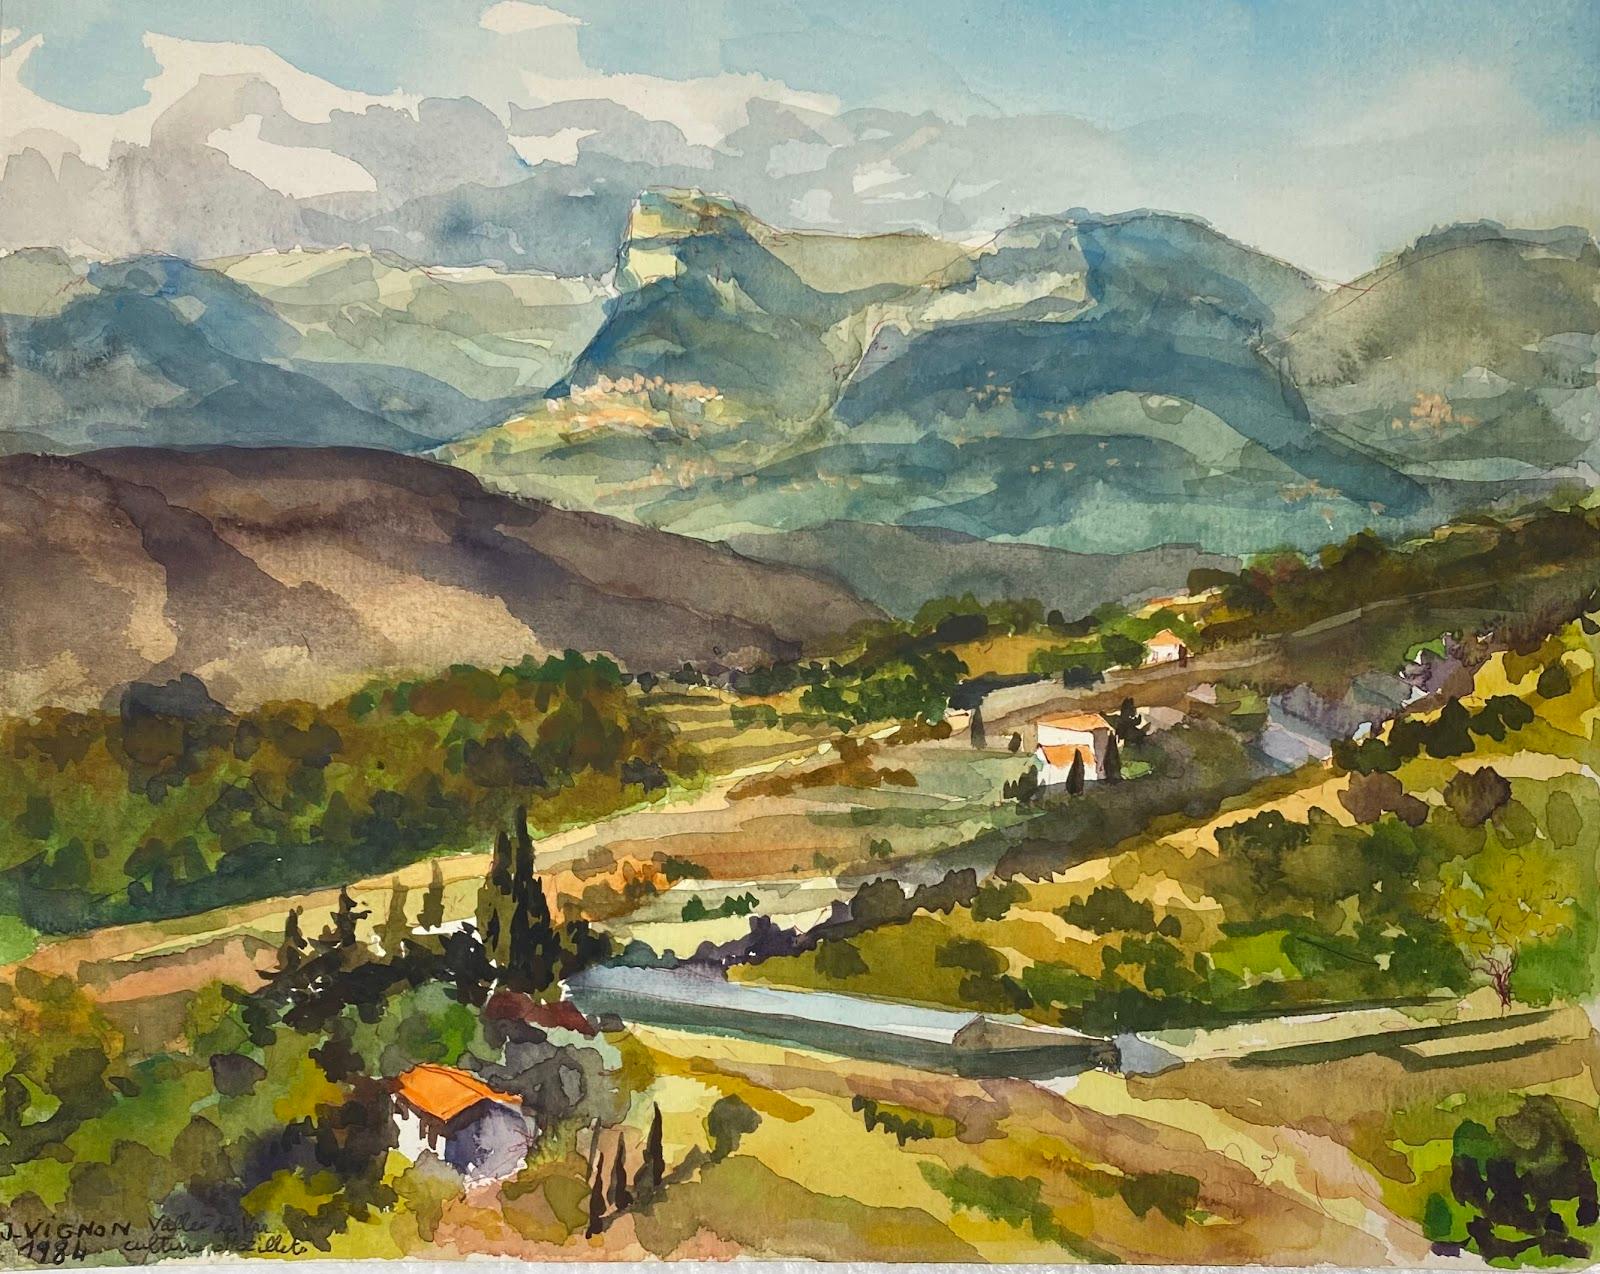 Josine Vignon Landscape Art - Post-Impressionist French Watercolour Painting Summer Valley Landscape 